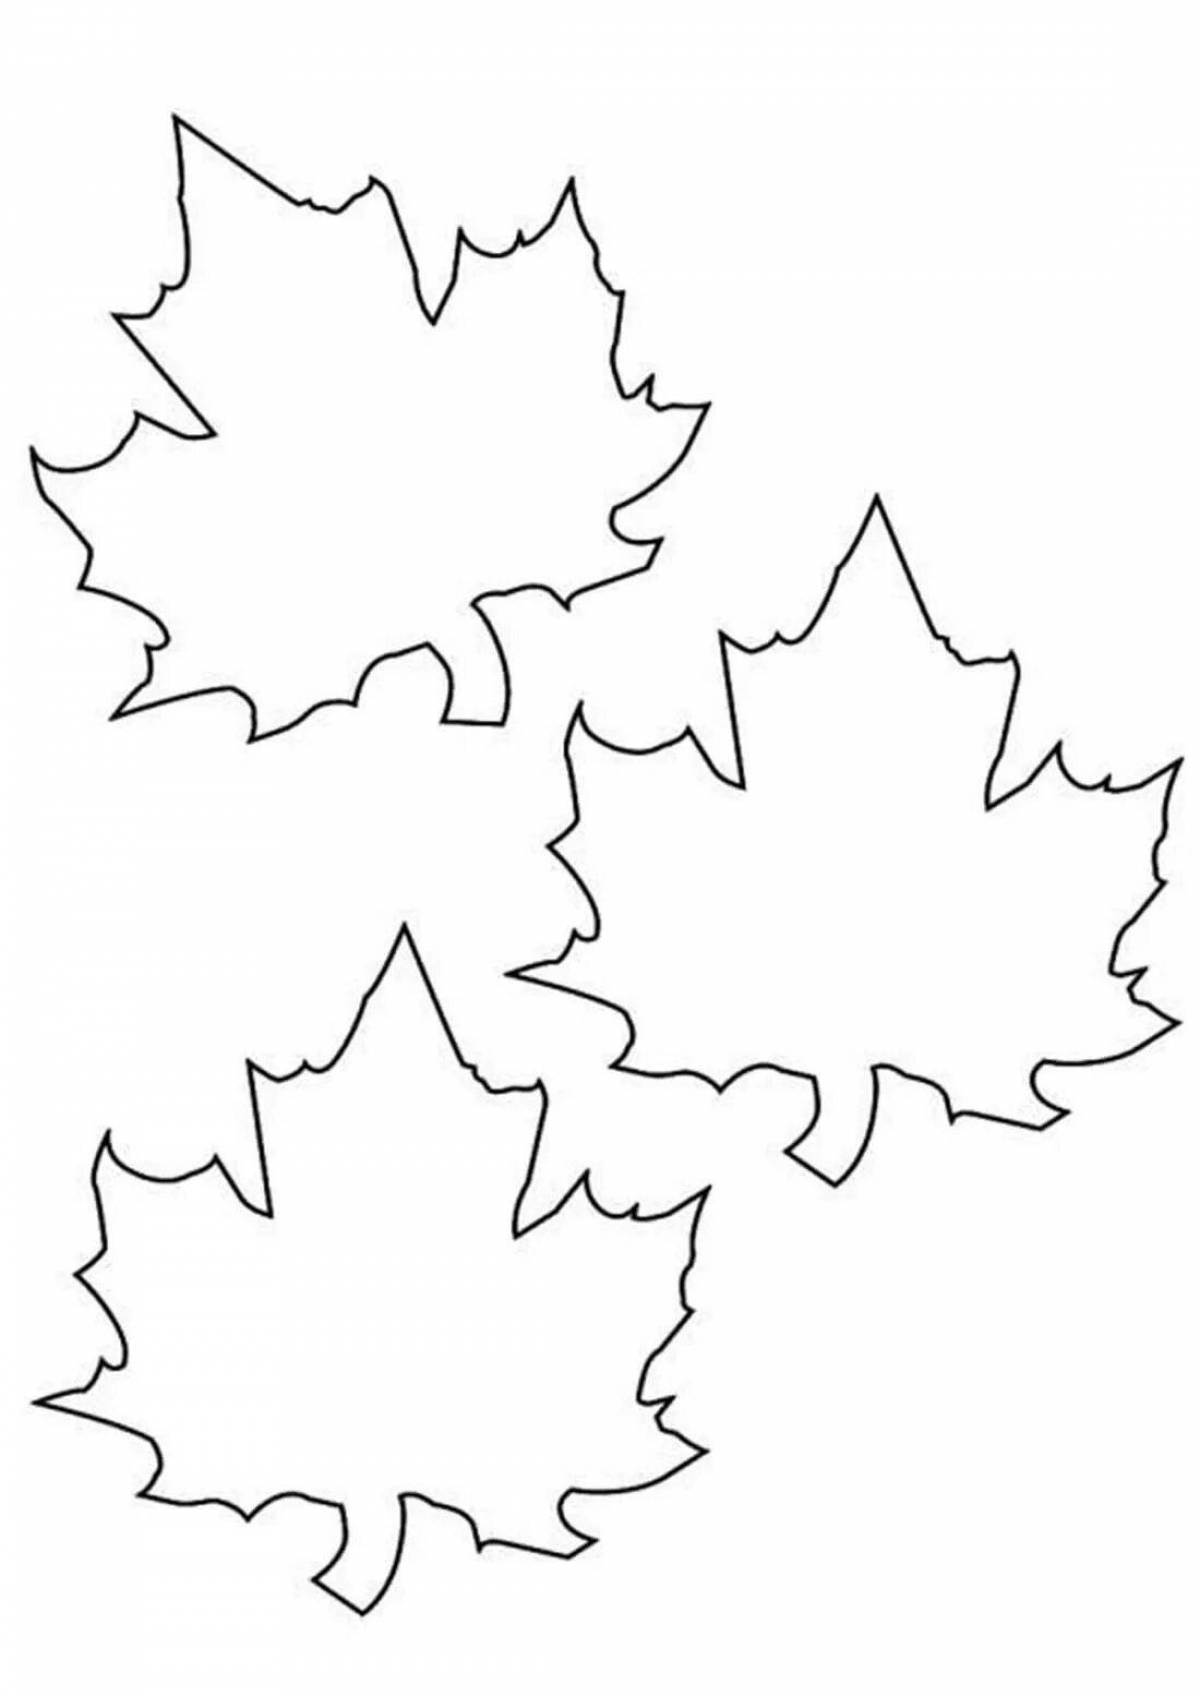 Maple leaf #12